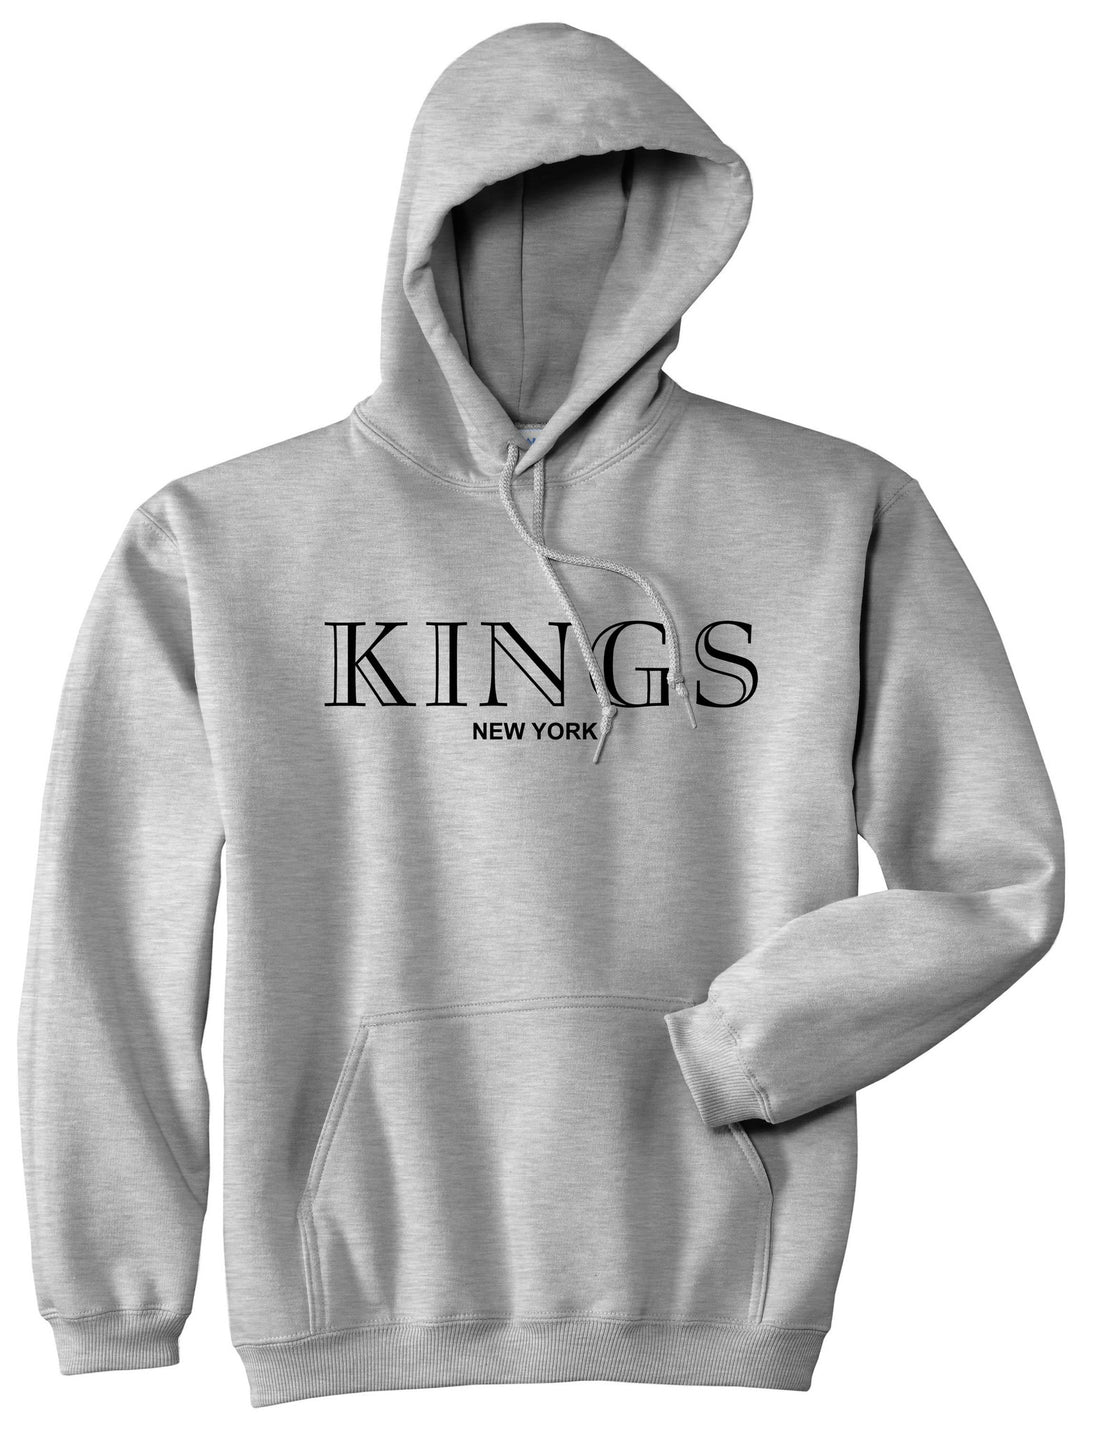 KINGS New York Fashion Pullover Hoodie Hoody in Grey